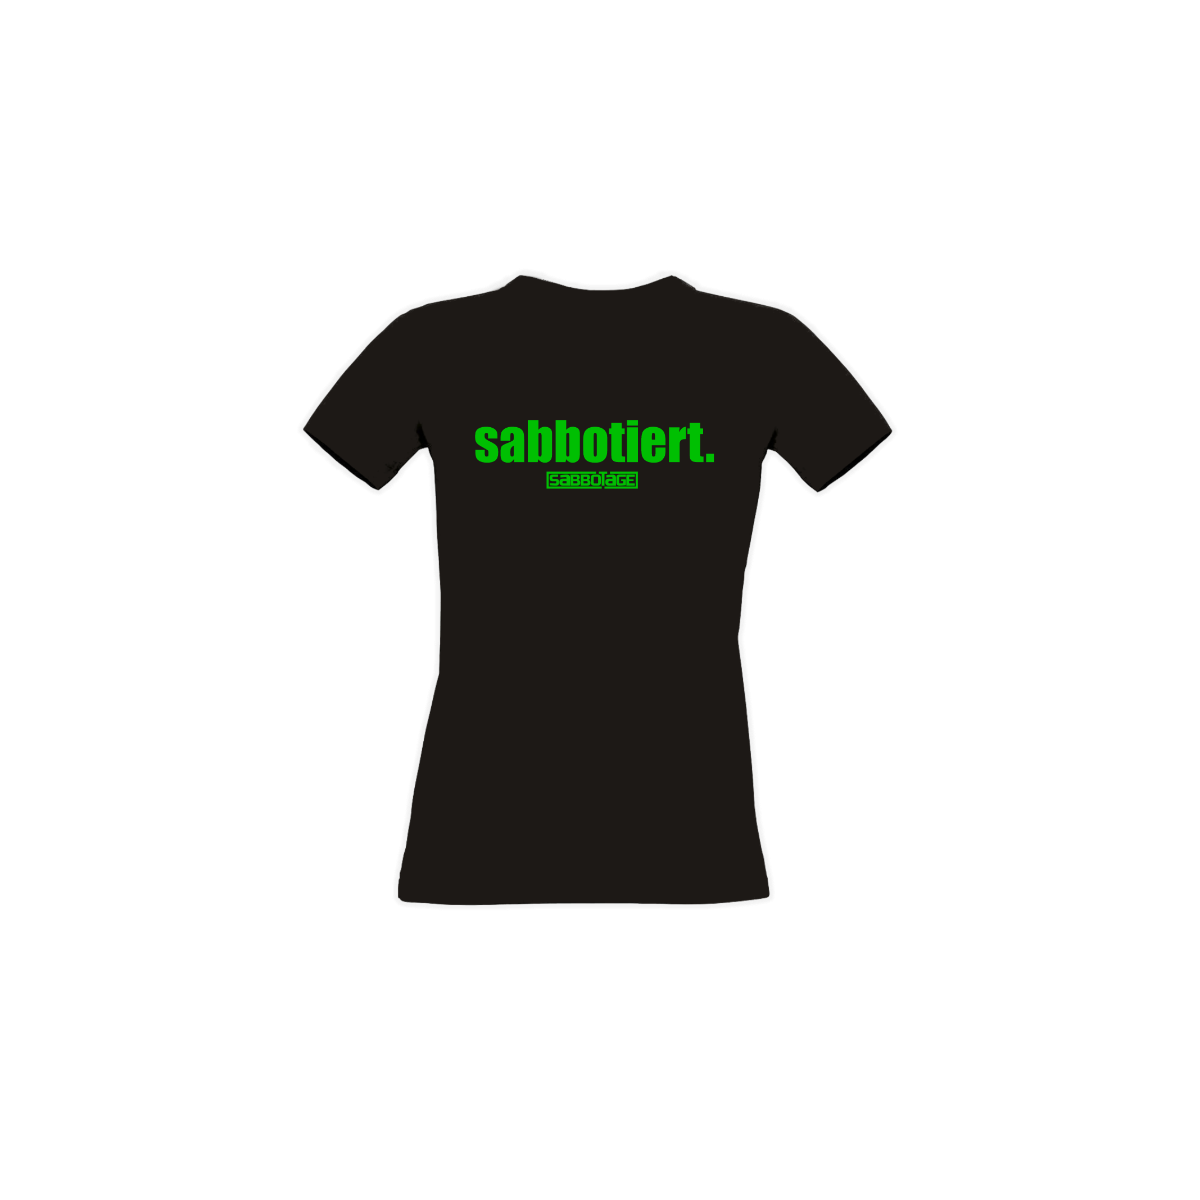 Girly-Shirt "SABBOTIERT." schwarz